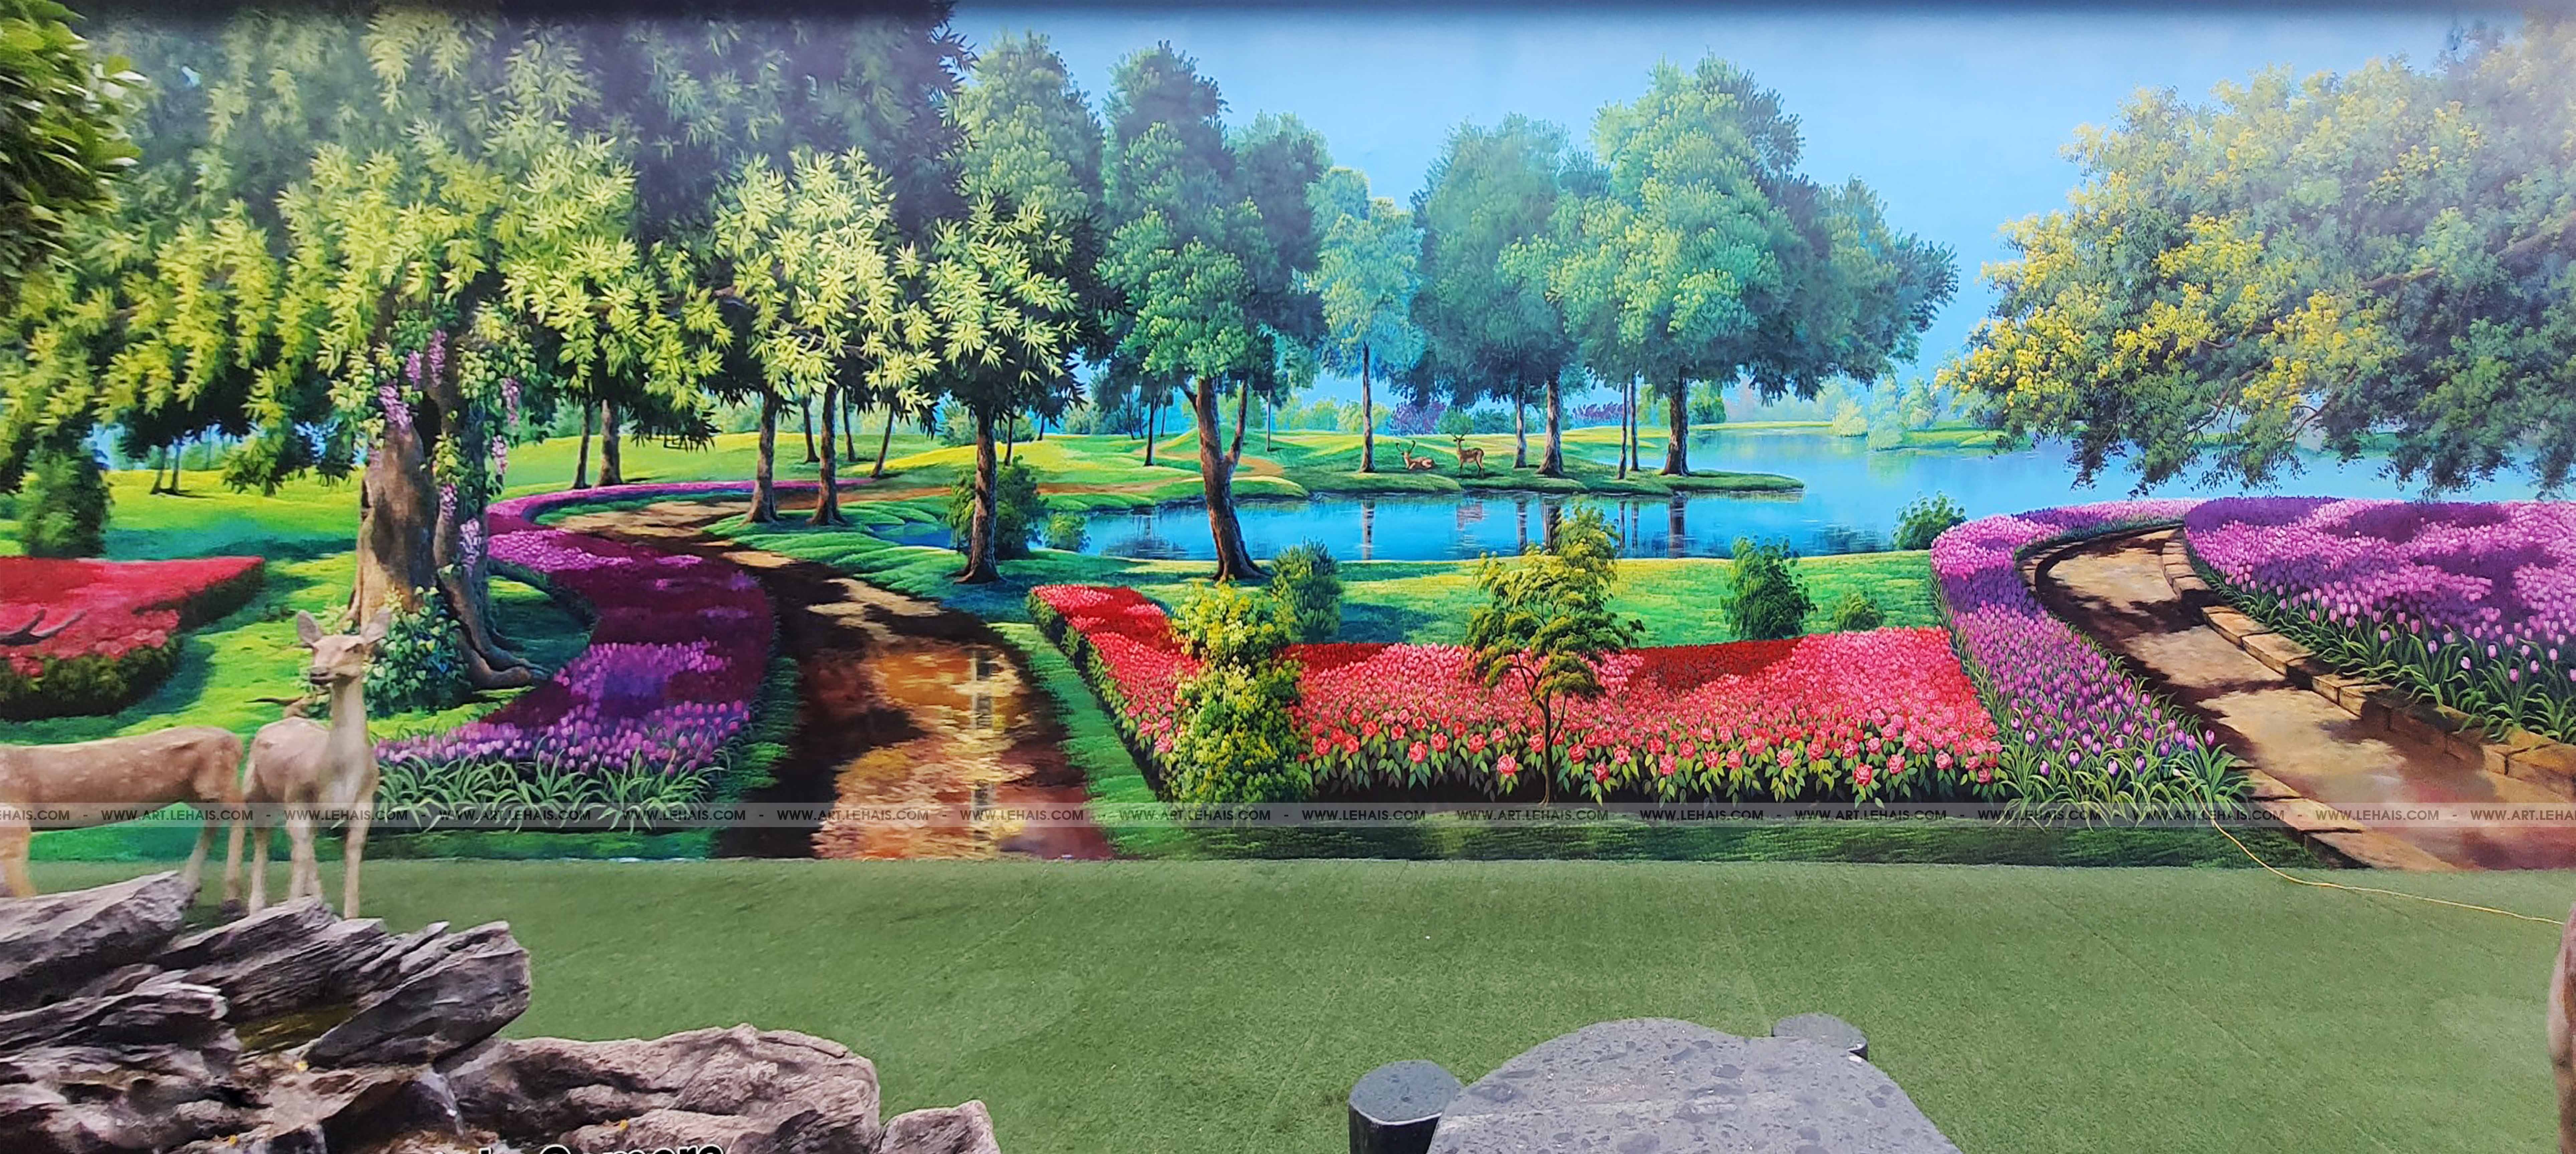 Vẽ tranh phong cảnh 3D trên tường tại khu du lịch sinh thái Dũng Tân ở Sông Công, Thái Nguyên - TT192LHAR 27